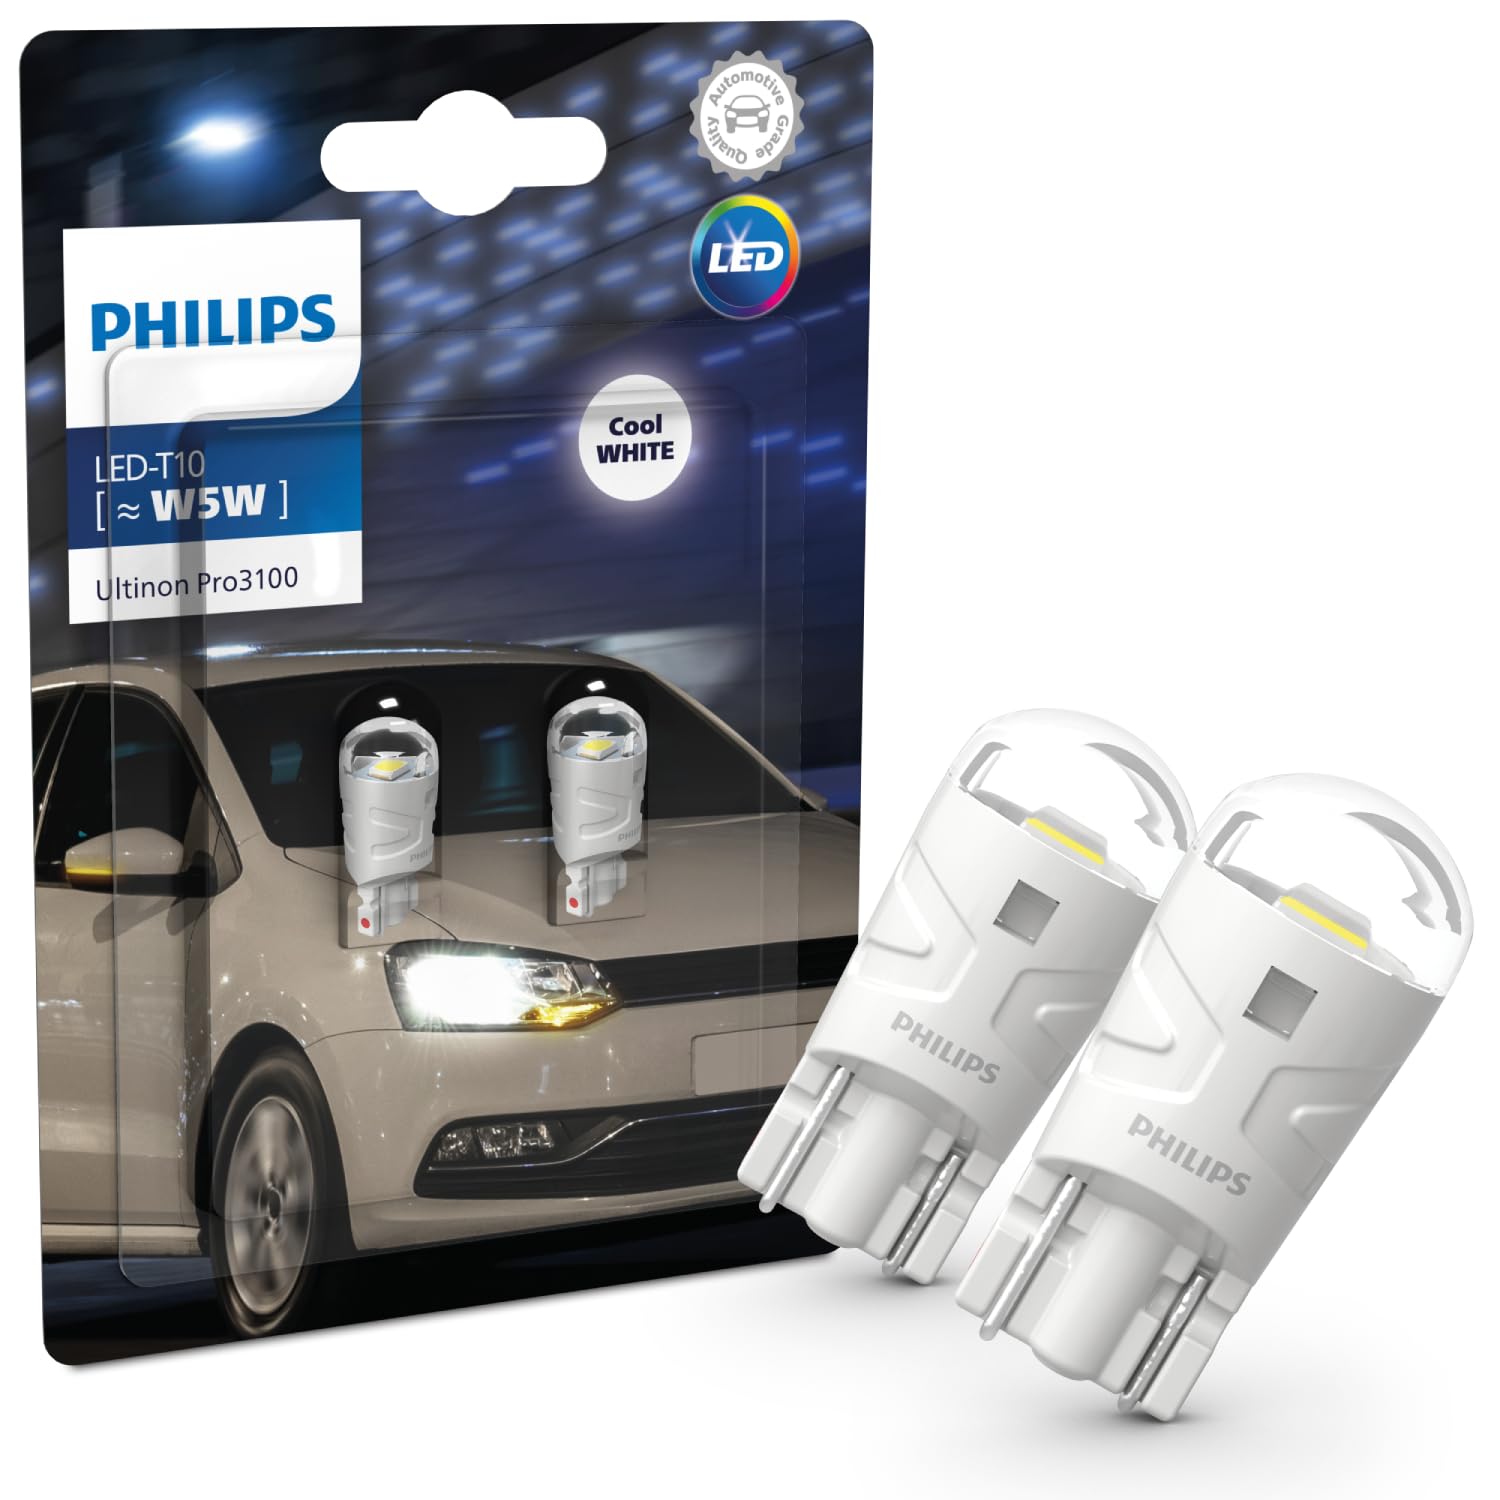 bien vendre Philips Ultinon Pro3100 LED T10 lampe de signalisation automobile (W5W), 6.500K cool white fAtGfmhzp boutique en ligne